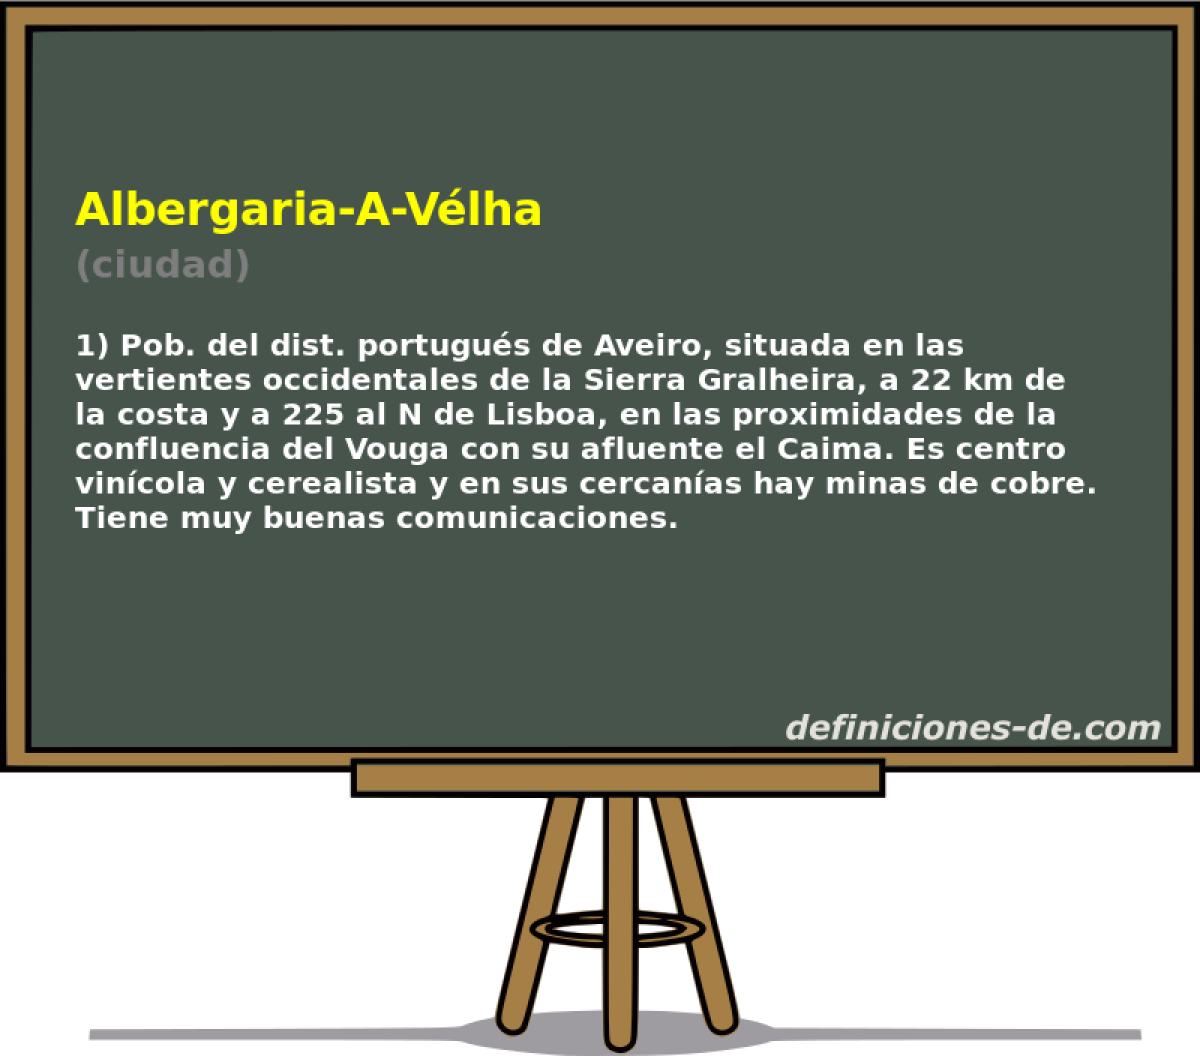 Albergaria-A-Vlha (ciudad)